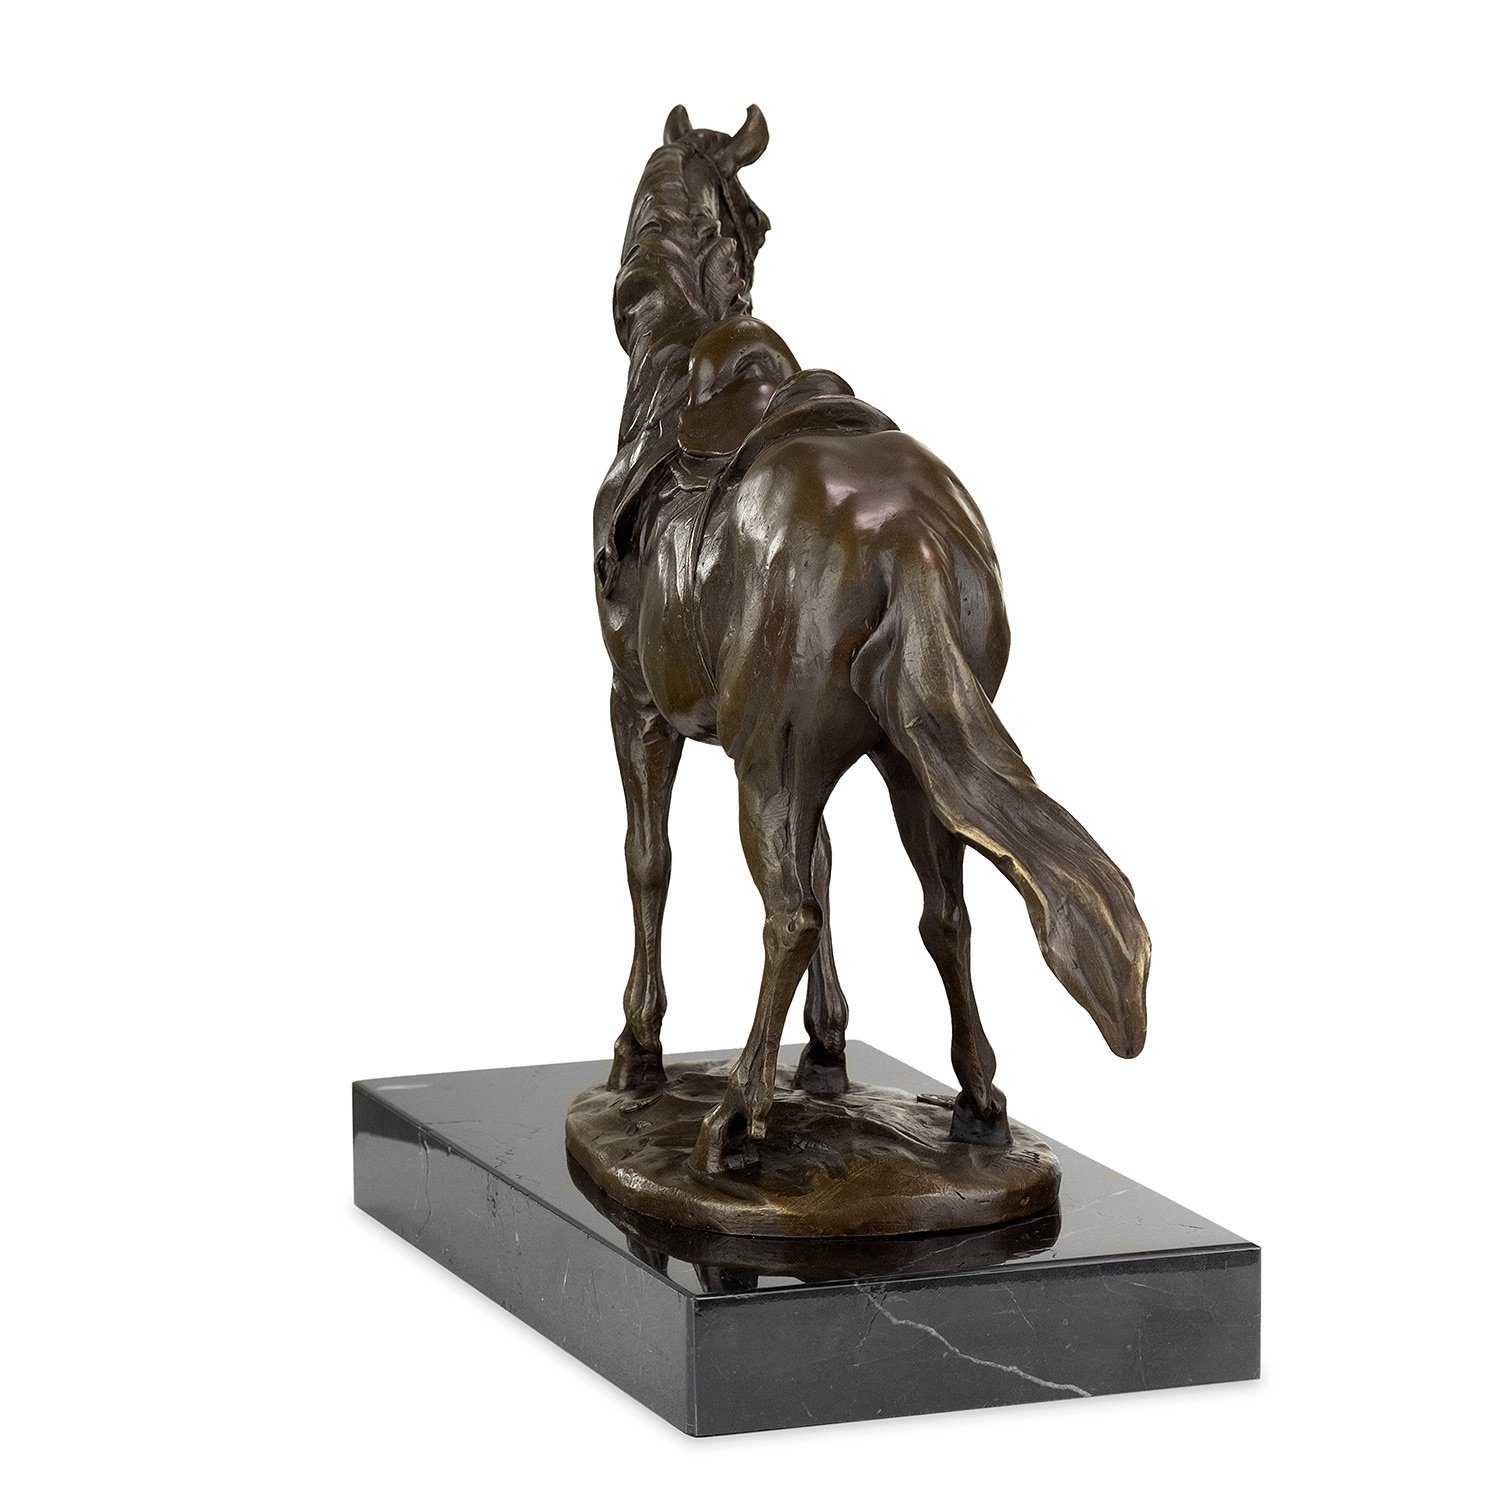 Moritz Skulptur Bronzefigur Pferd mit Figuren Halfter, Sattel Skulpturen Antik-Stil Statue